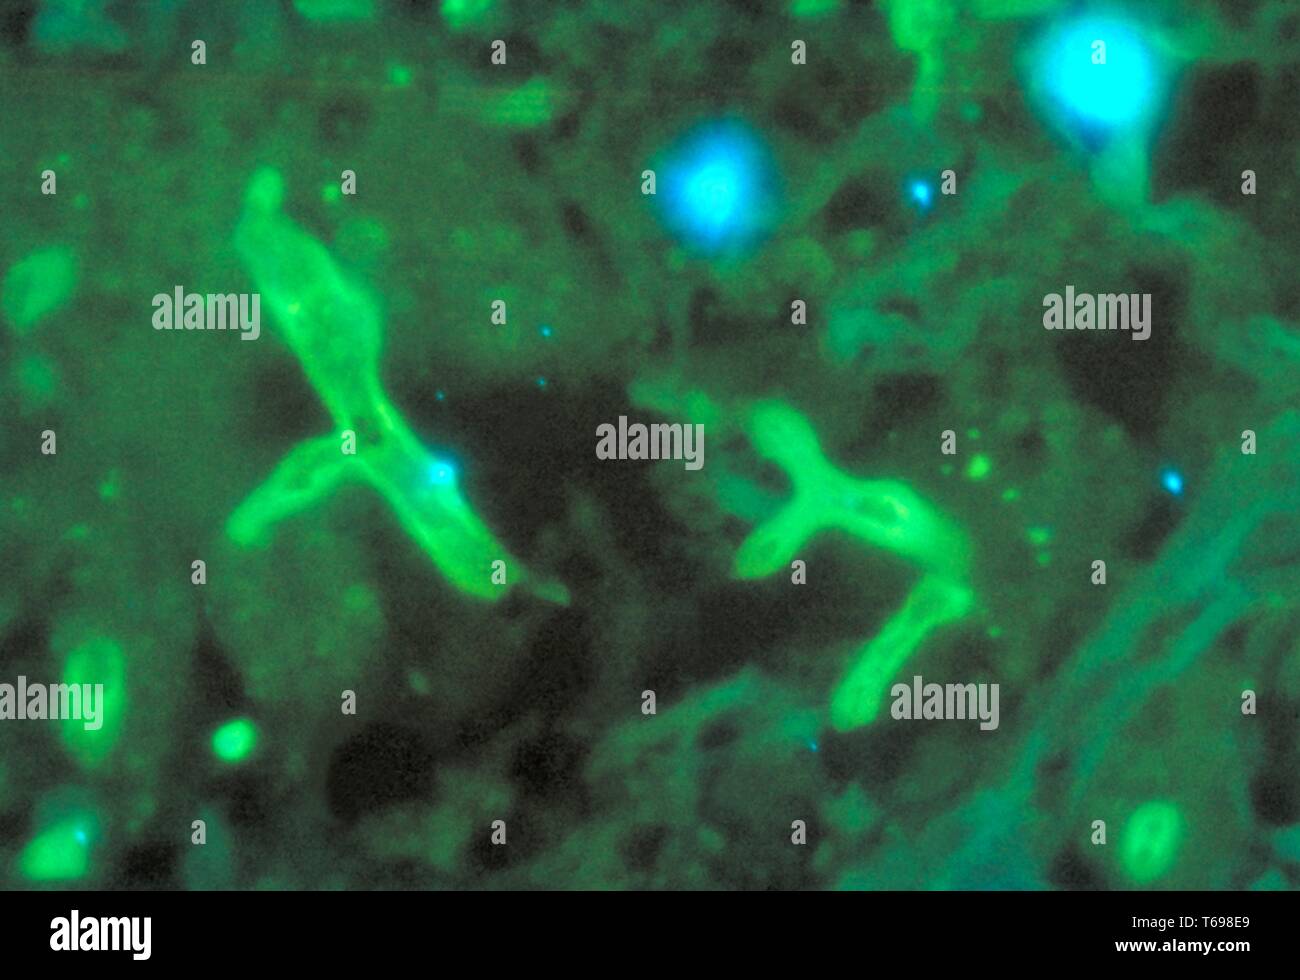 Fluoreszierende Antikörper Fleck photomicrograph des histopathologic Veränderungen in zygomycosis durch die Rhizopus arrhizus Pilz, 1972 verursacht. Bild mit freundlicher Genehmigung Zentren für Krankheitskontrolle und Prävention (CDC)/Dr William Kaplan. () Stockfoto